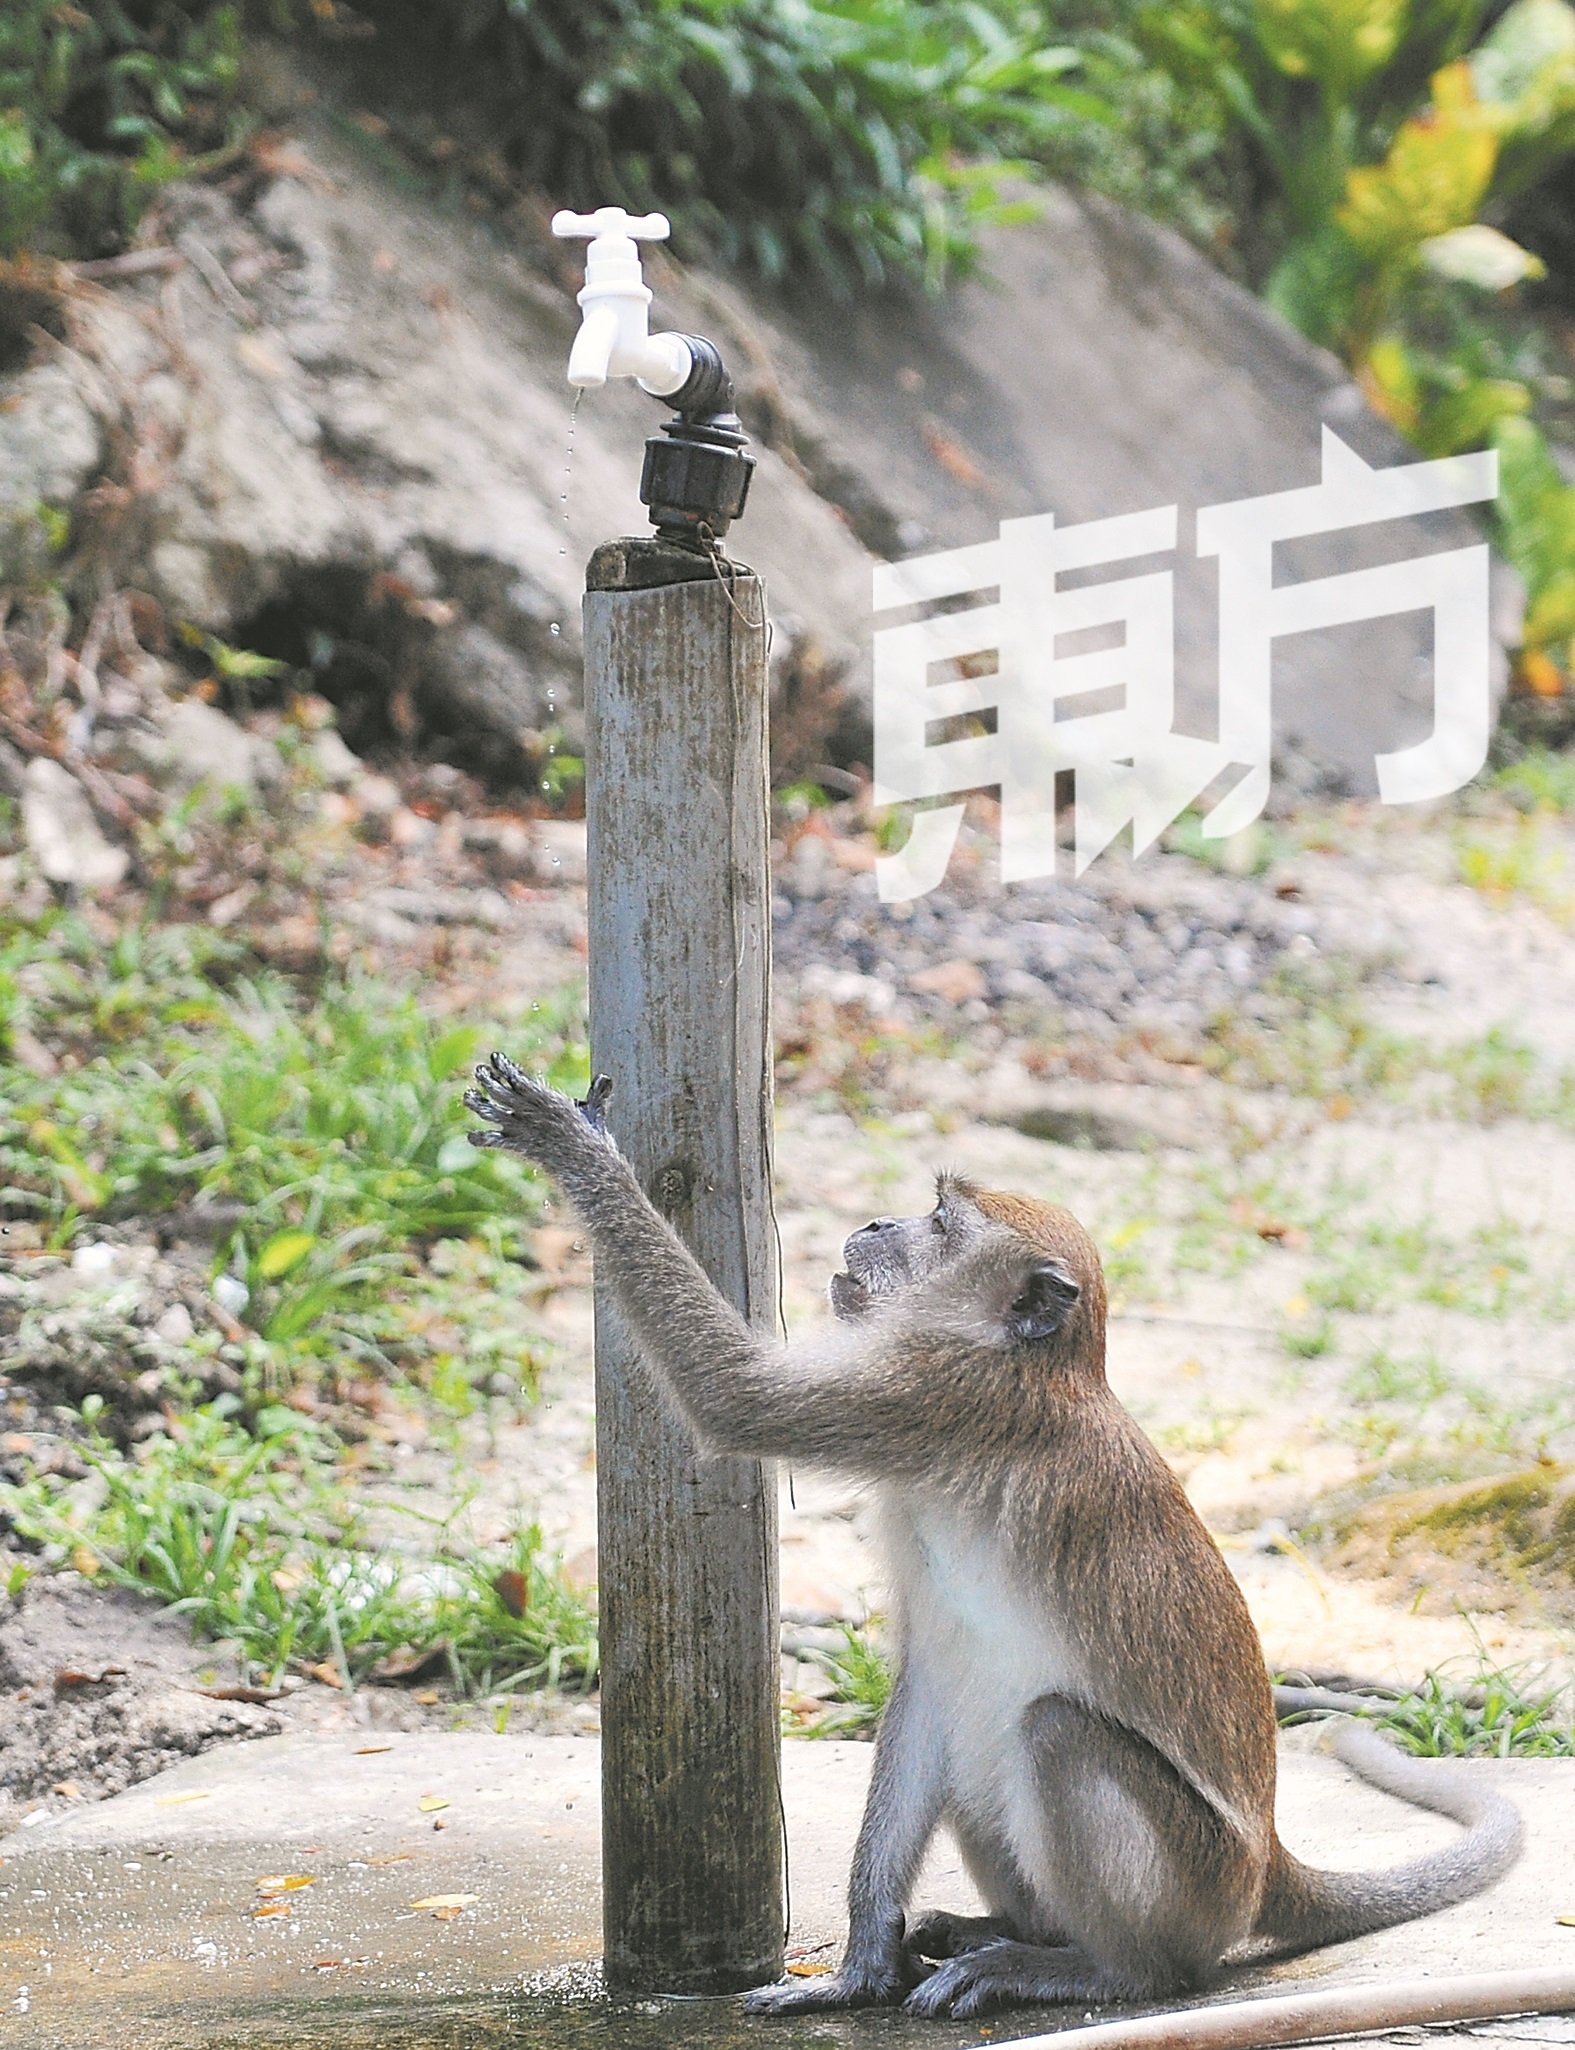 康晴生态森林公园四处可见猴子的踪影。（摄影：邱继贤）